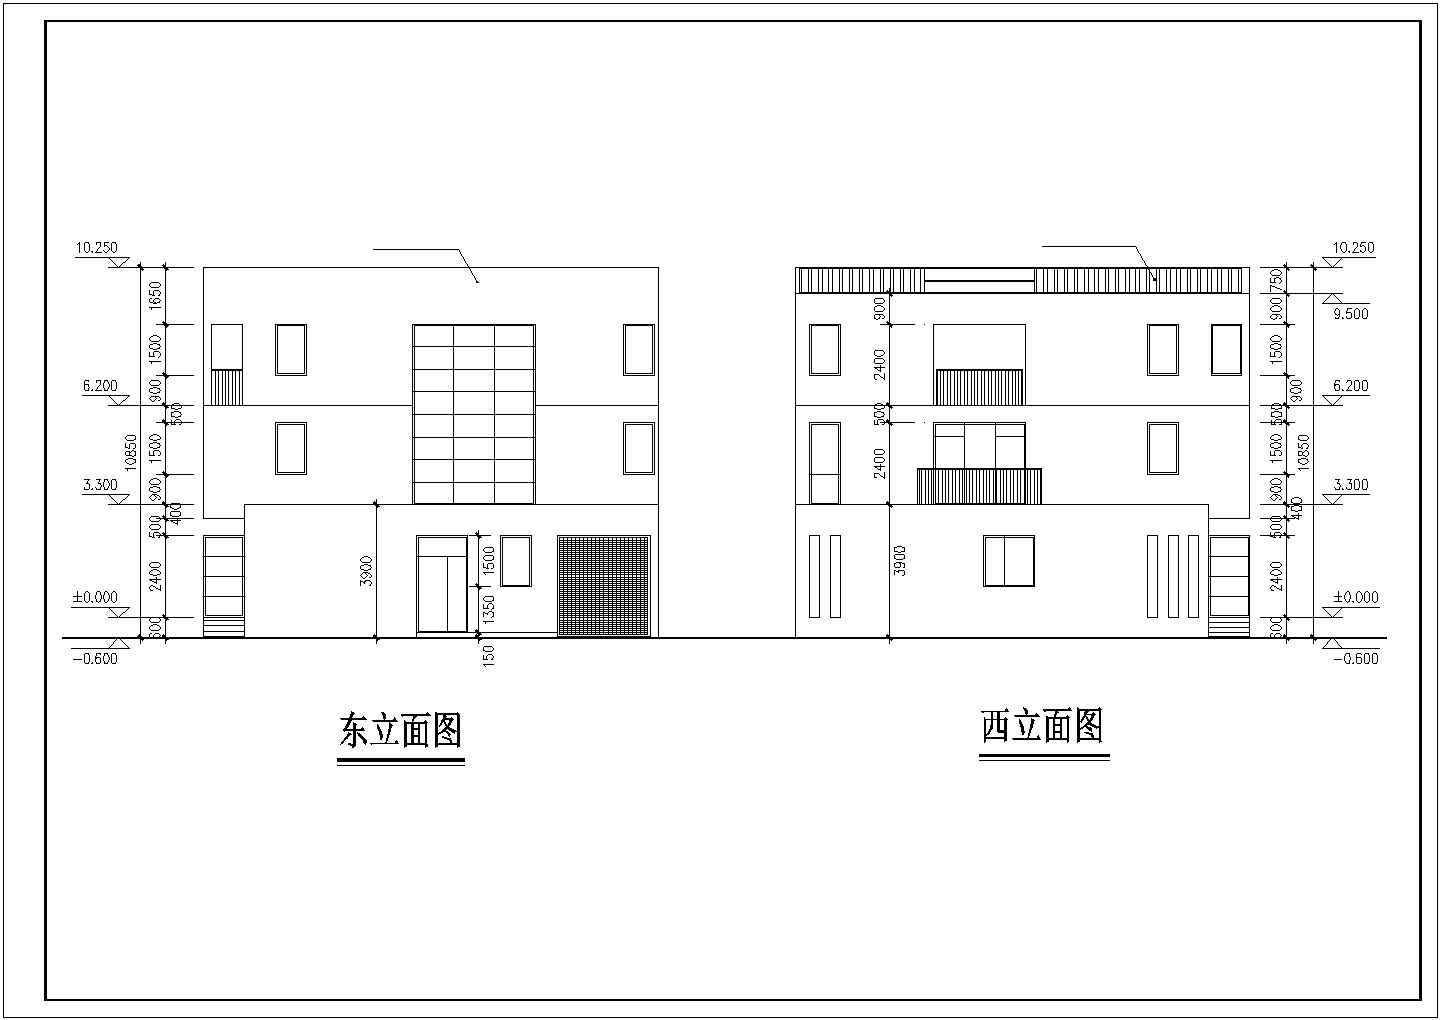 一套小型单体别墅建筑施工图